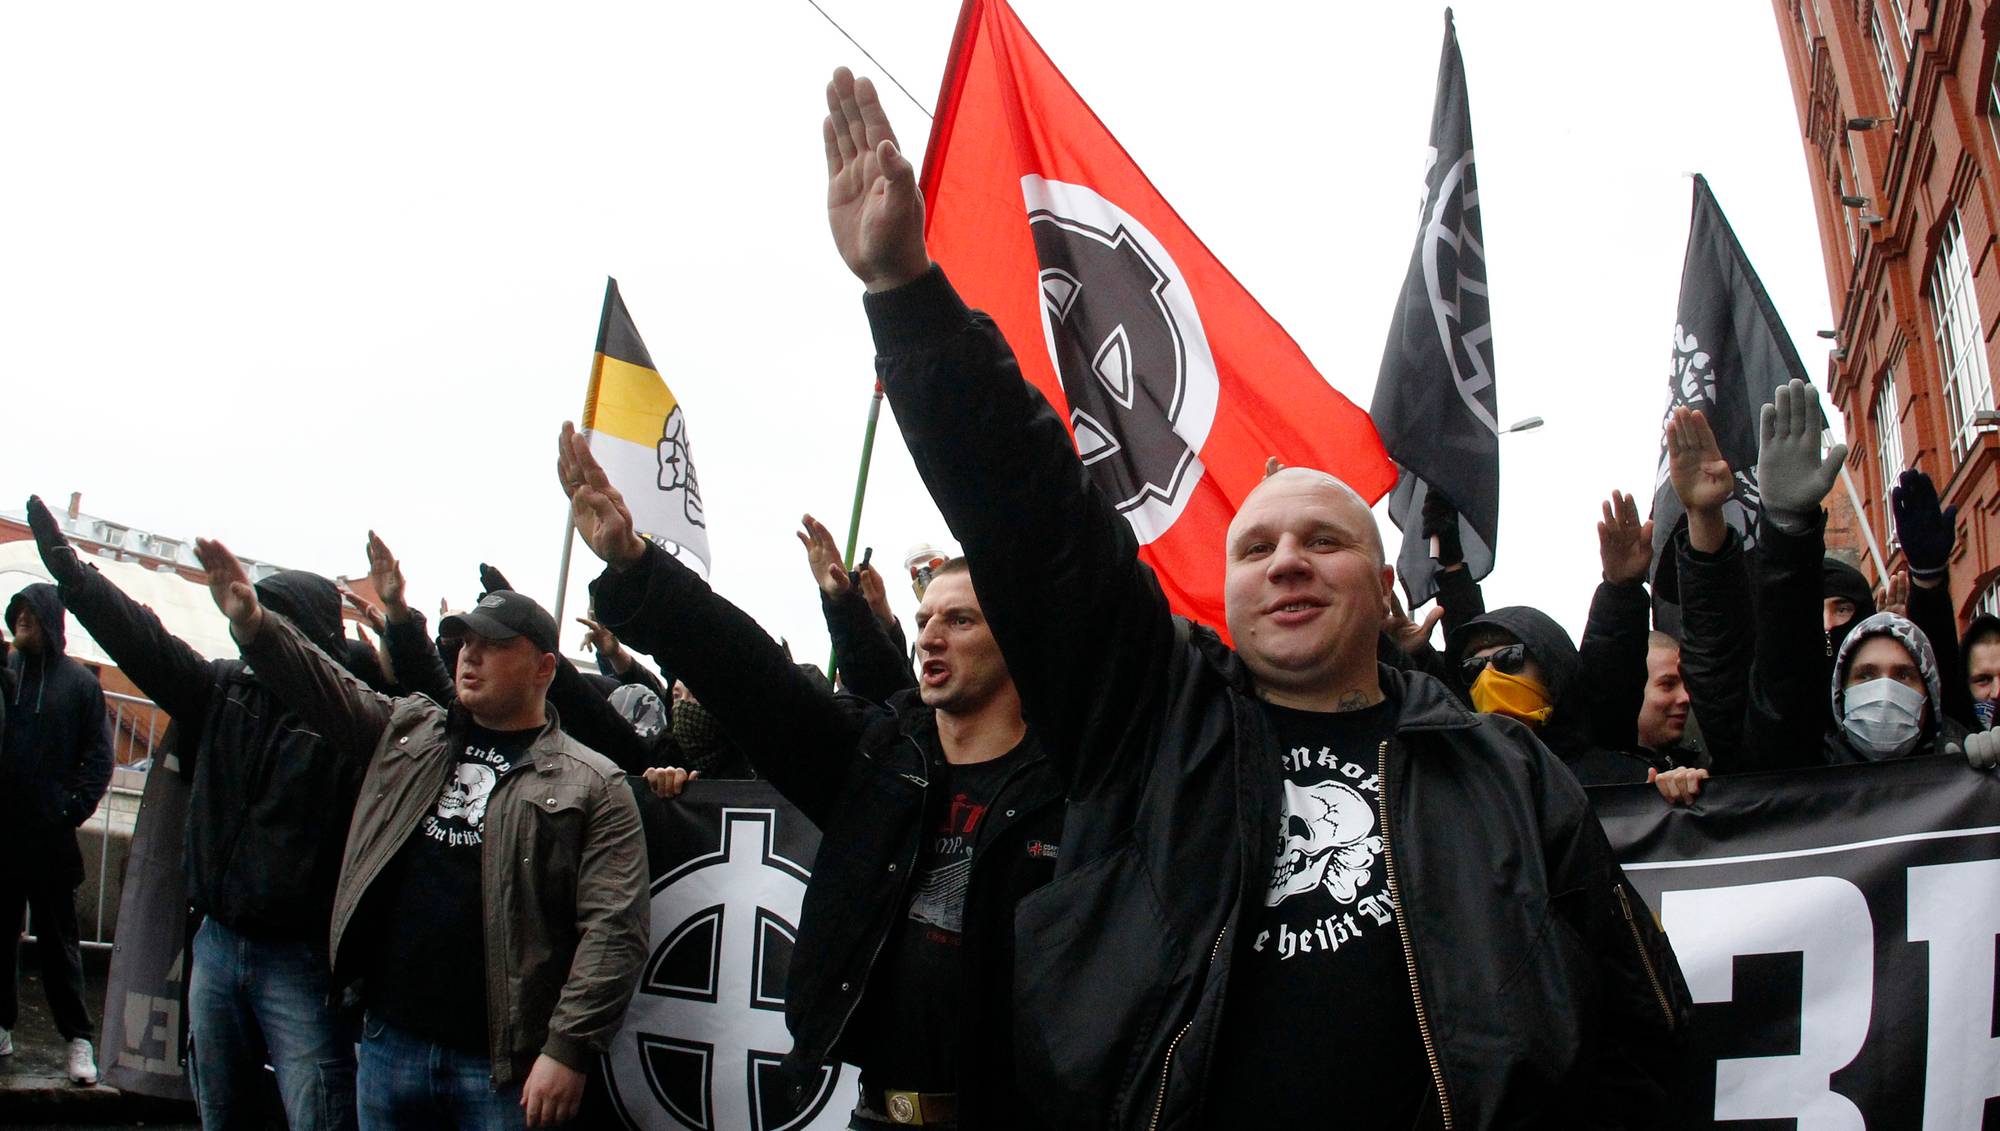 1 национал. Русский марш неонацисты в России. Русский марш фашисты в Москве. Русский марш нацисты. Нацистские российские нацистские группировки.